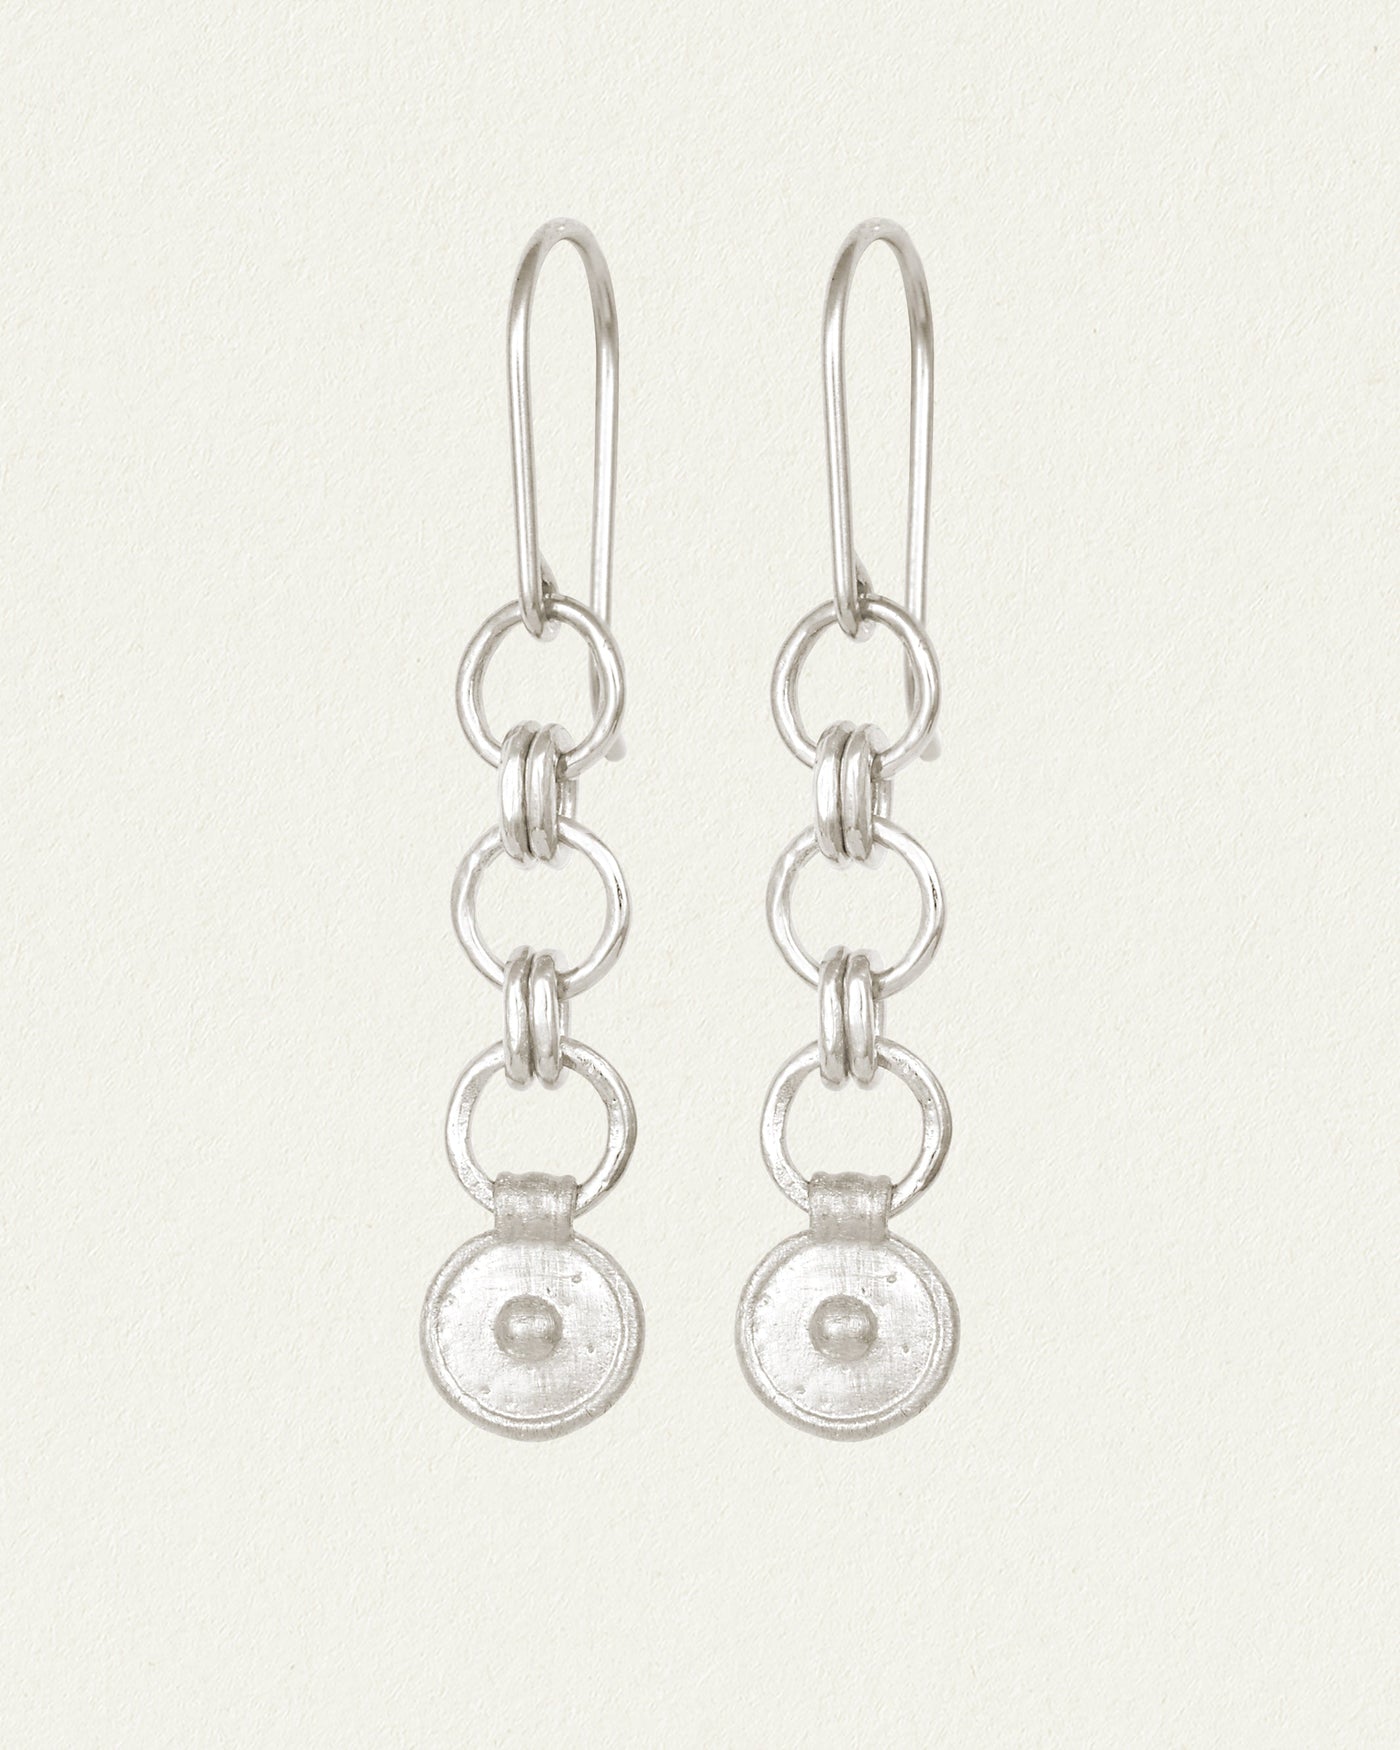 Buy Revere 9ct Gold Plated Sterling Silver Heart Earrings | Womens earrings  | Argos